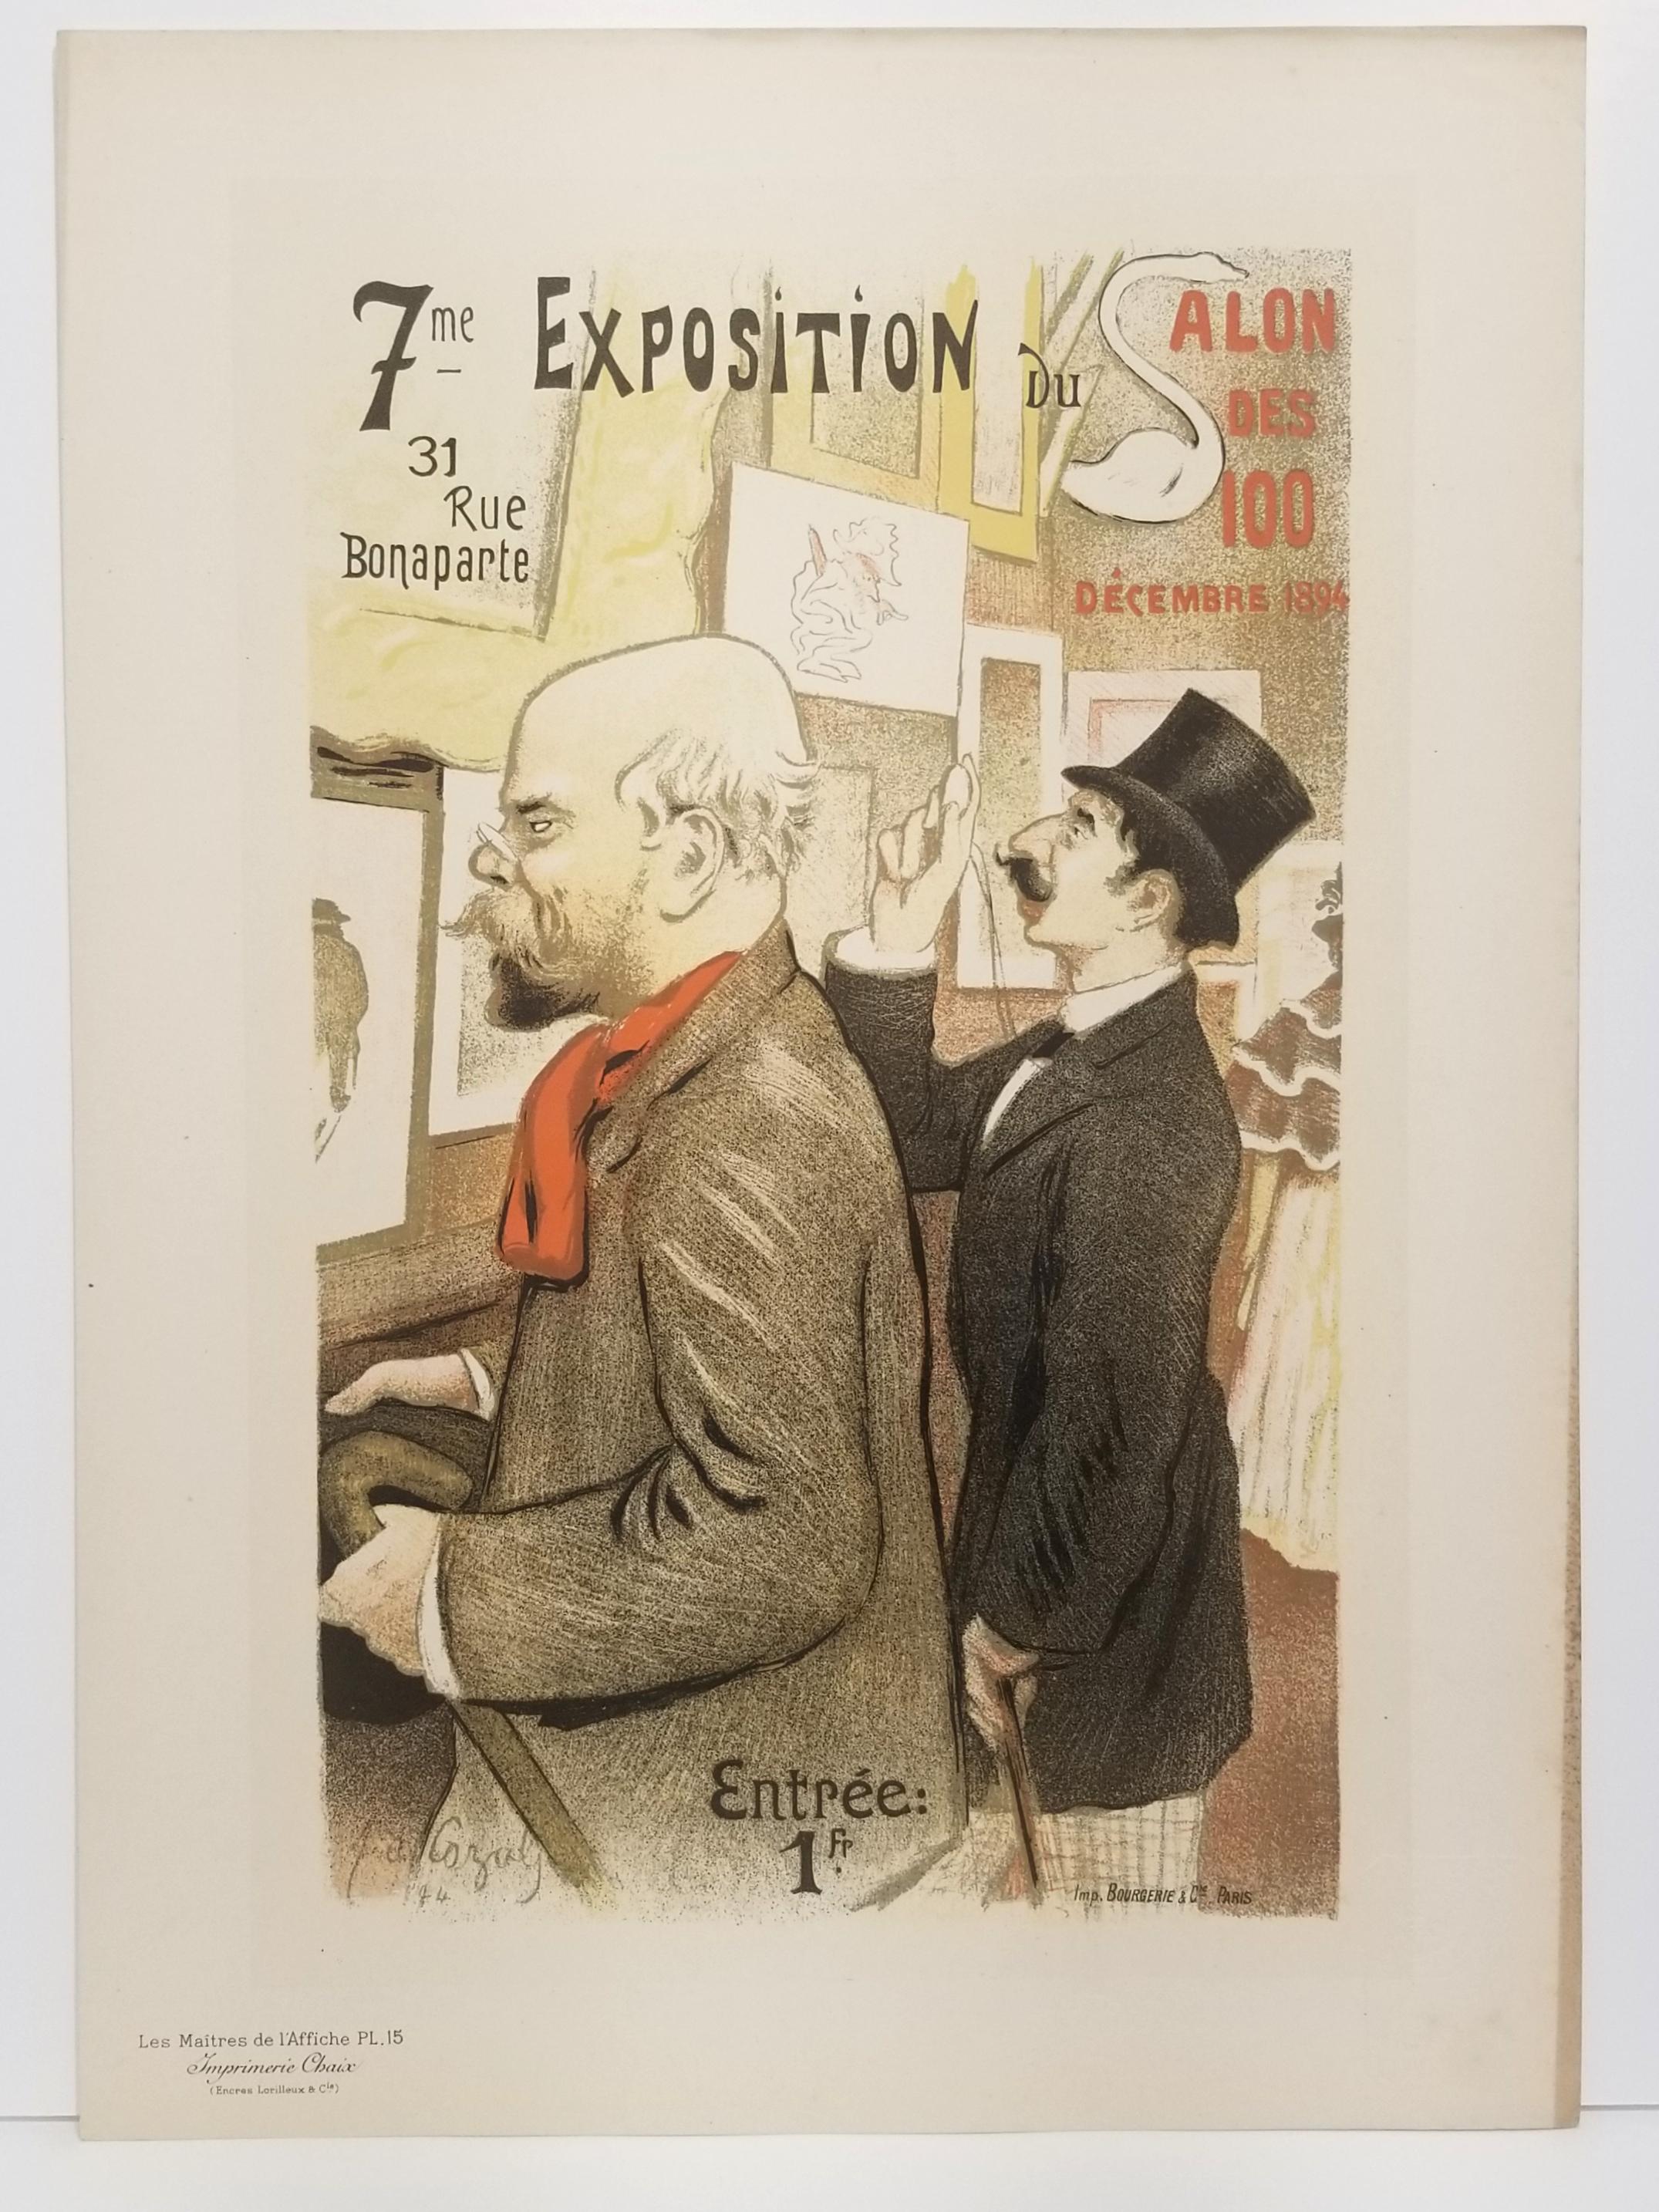 7ème Exposition du Salon des Cent.  - Print by Frédéric Auguste Cazals